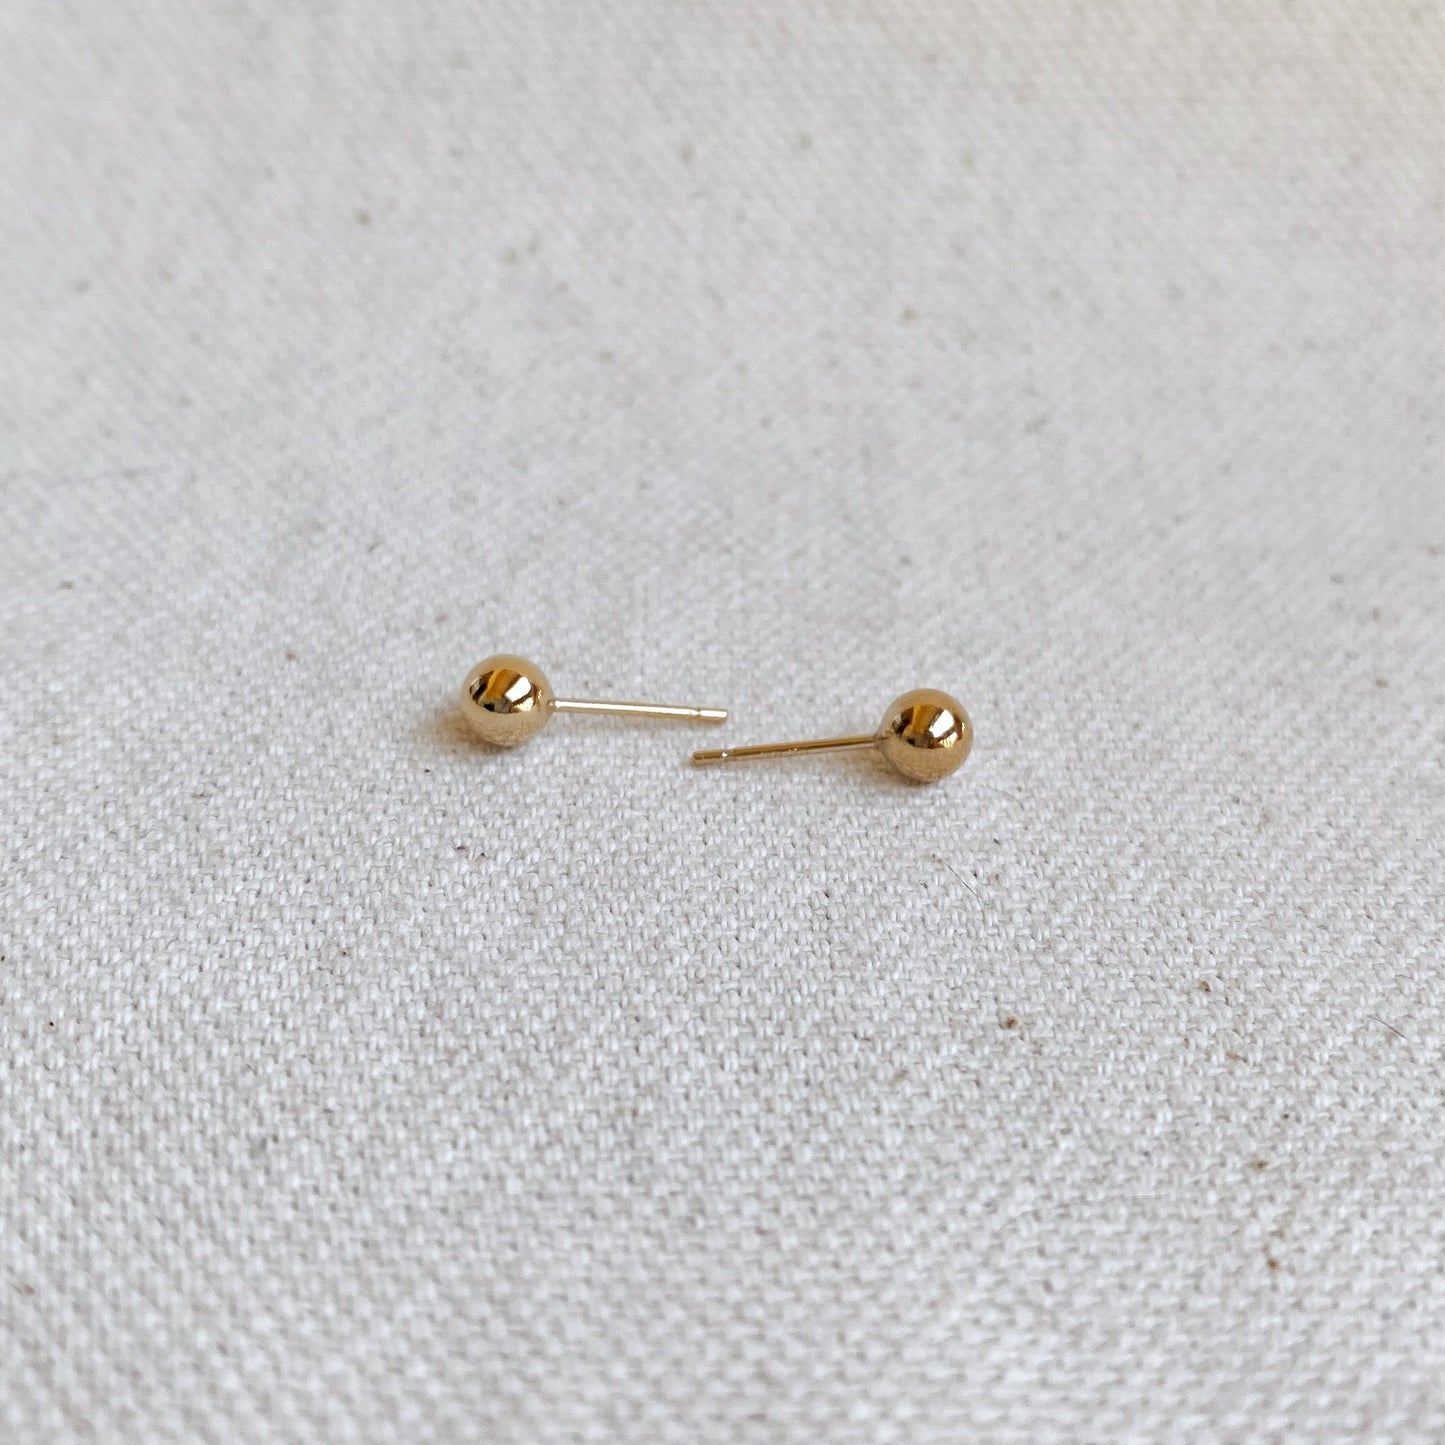 GoldFi 14k Gold Filled 4.0mm Ball Stud Earrings